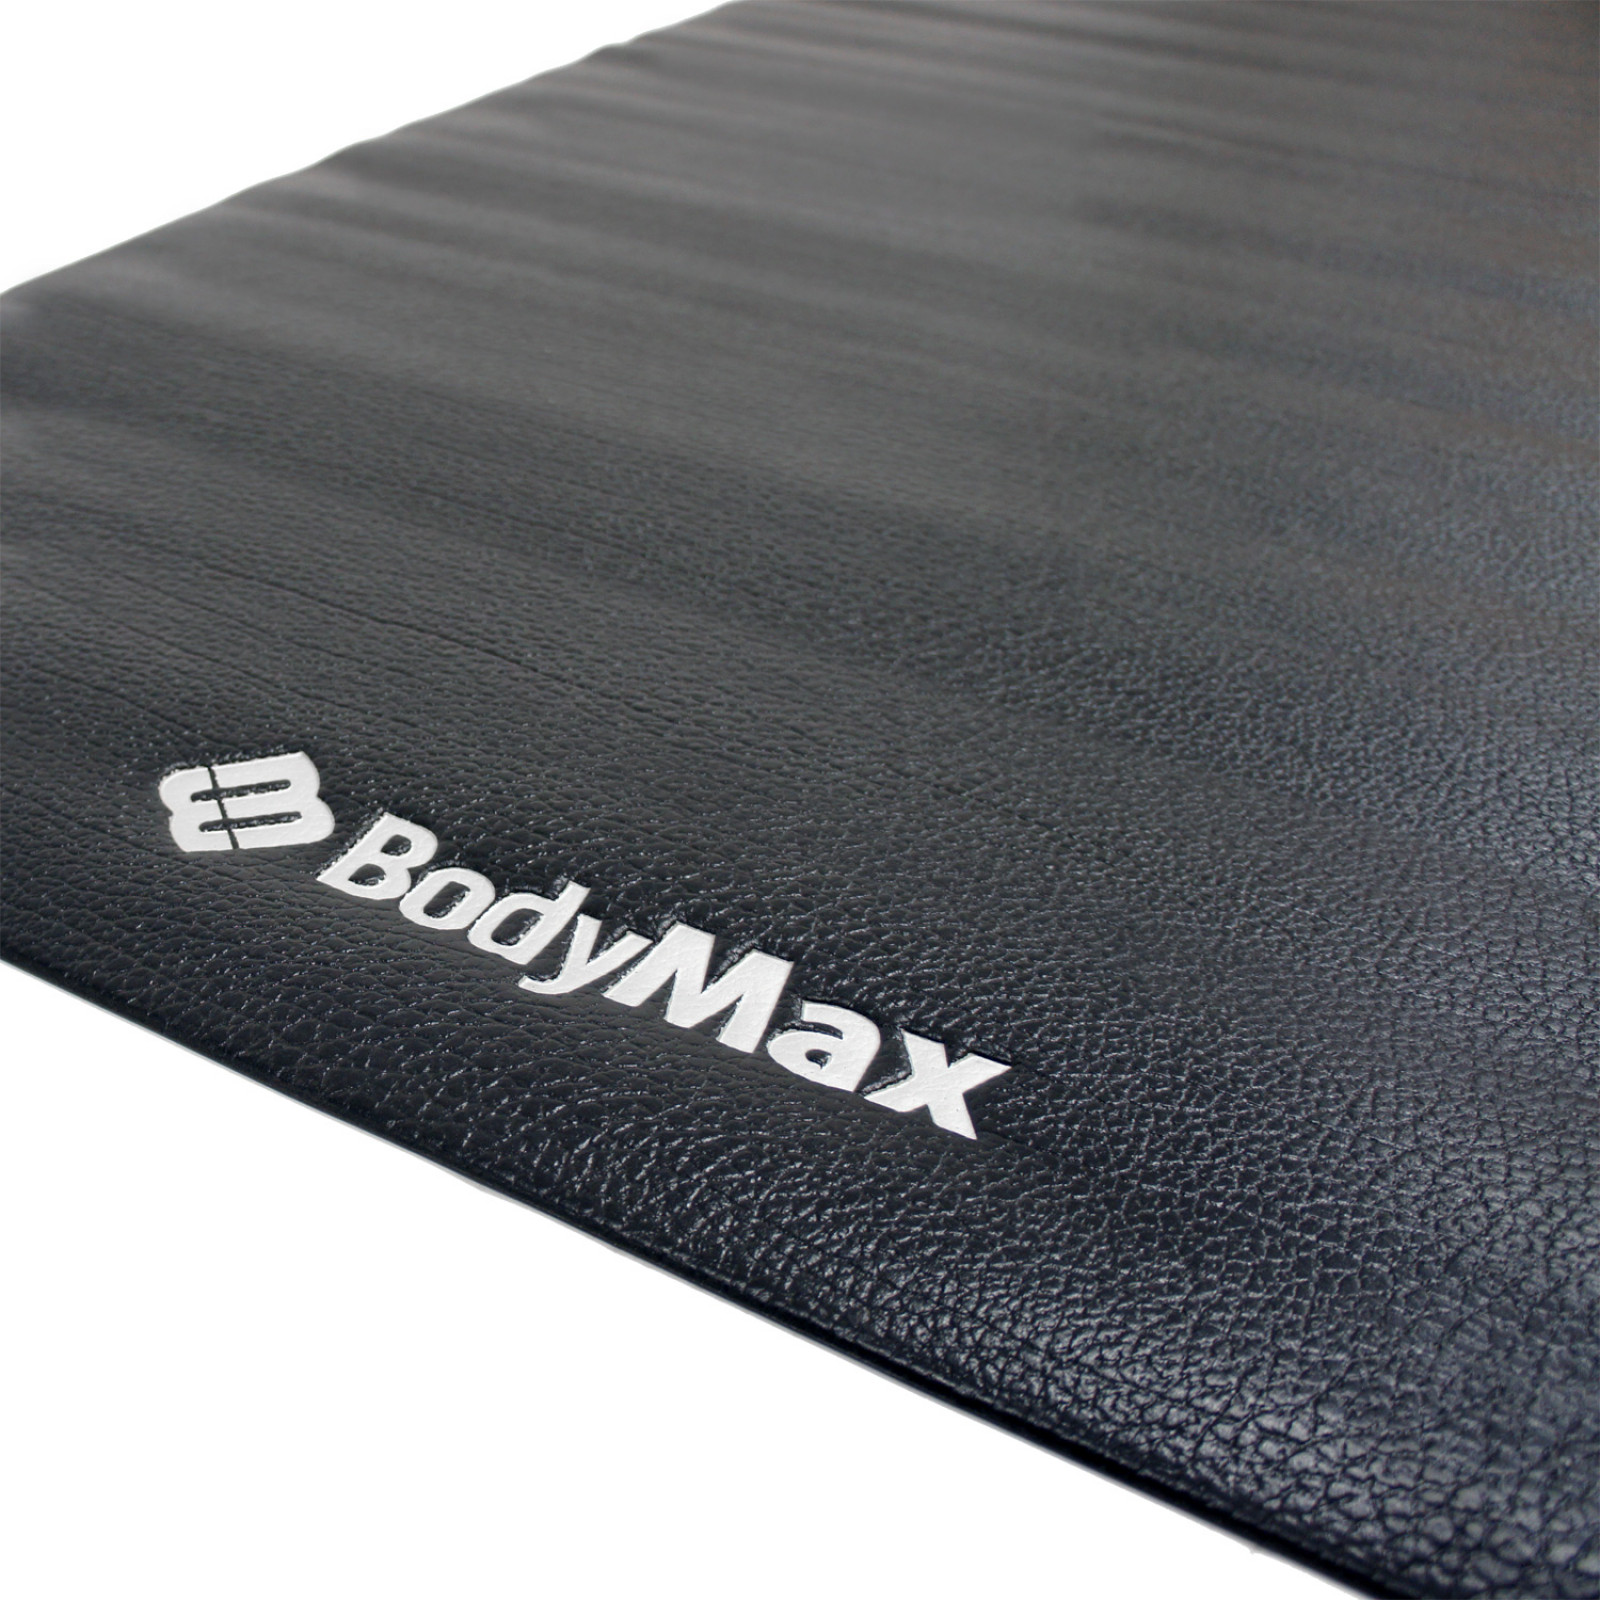 BodyMax CV Mat - Shop Online 